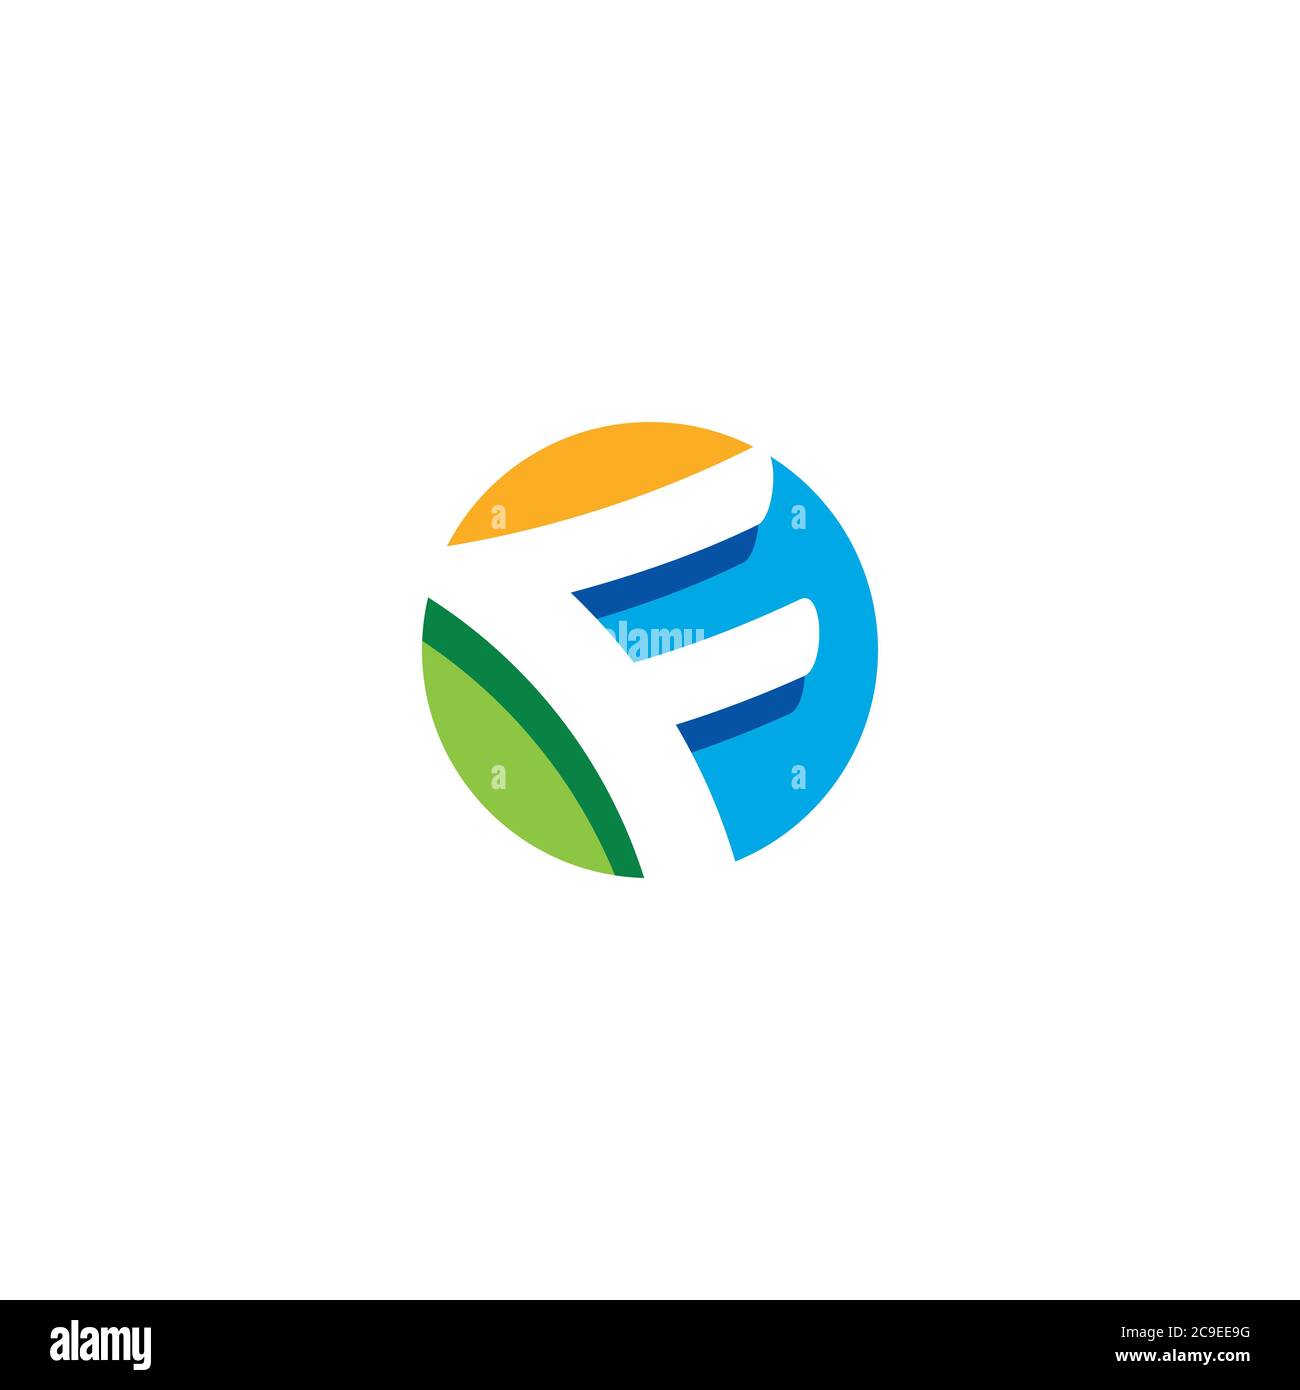 Letter F logo / icon design Stock Vector